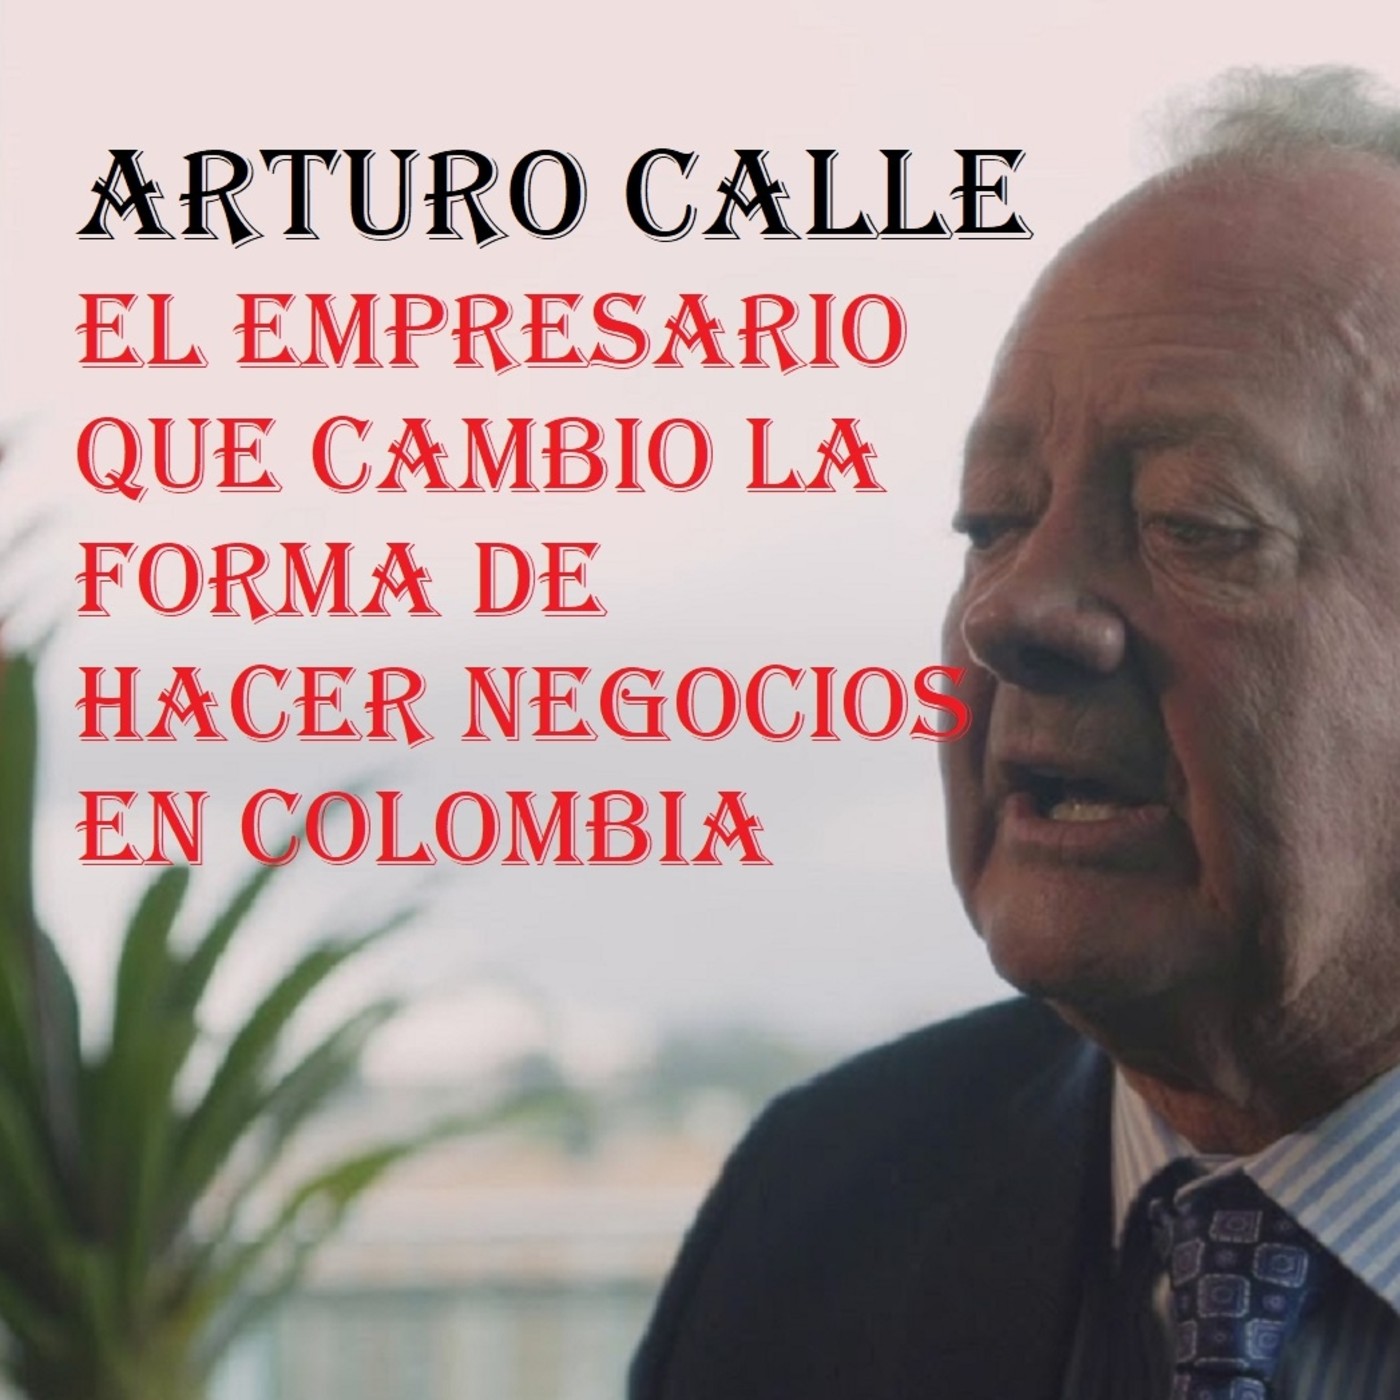 Episodio 4: Arturo Calle, el empresario que cambio el comercio Colombiano